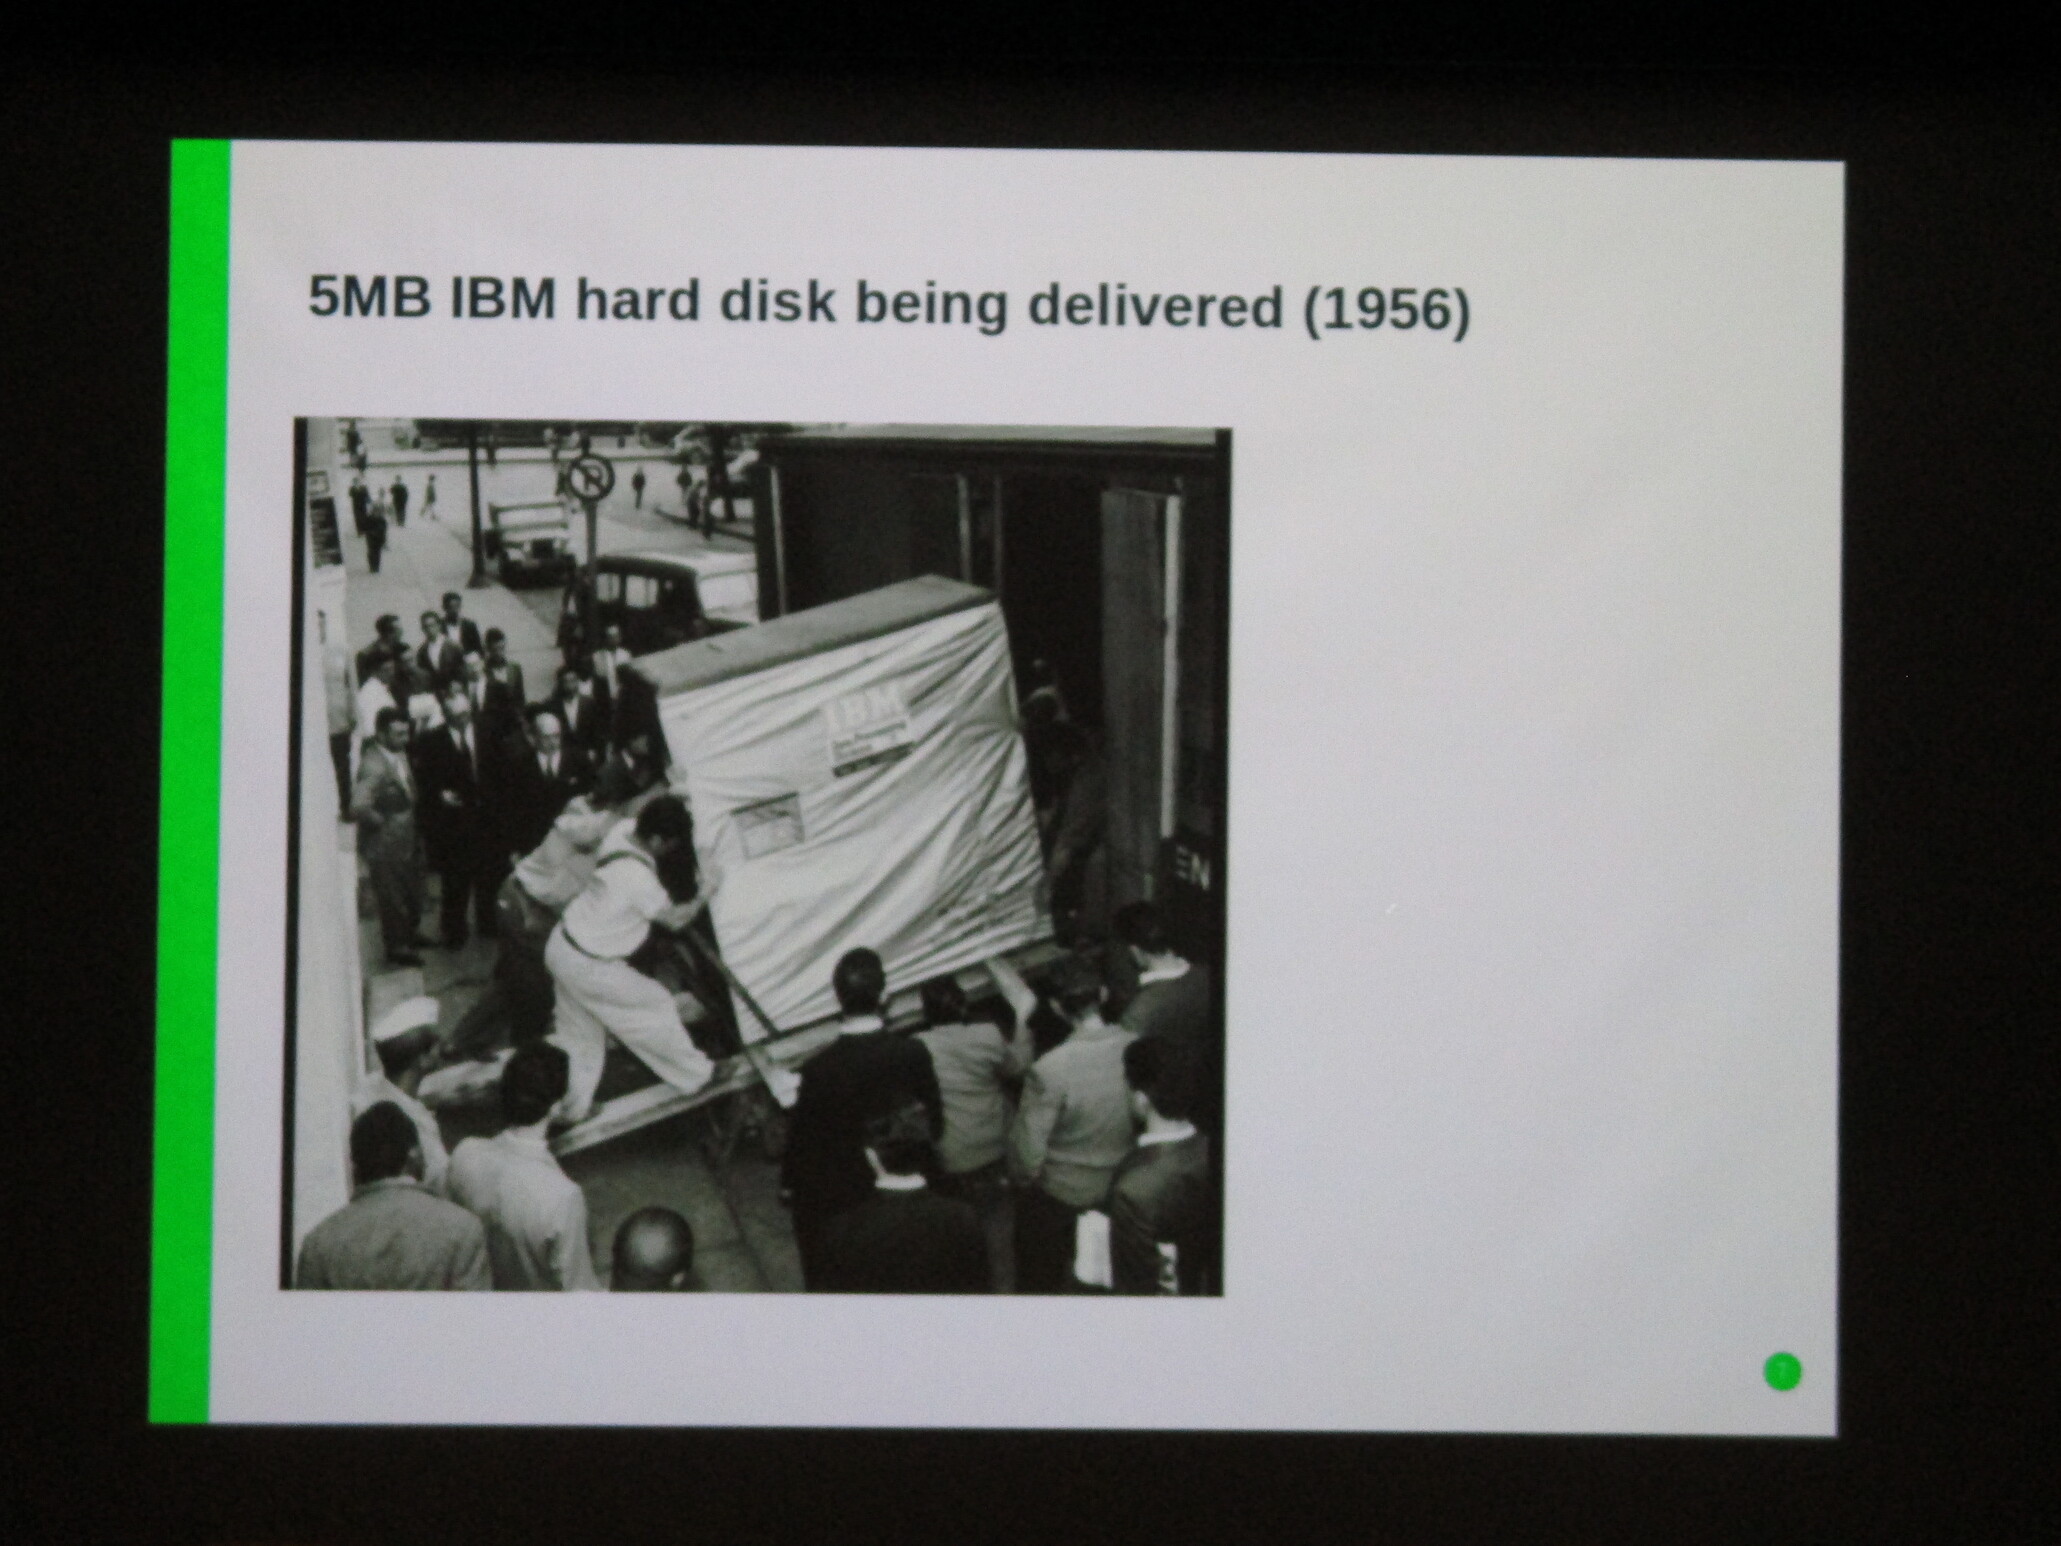 5MB IBM hard disk being delivered (1956)